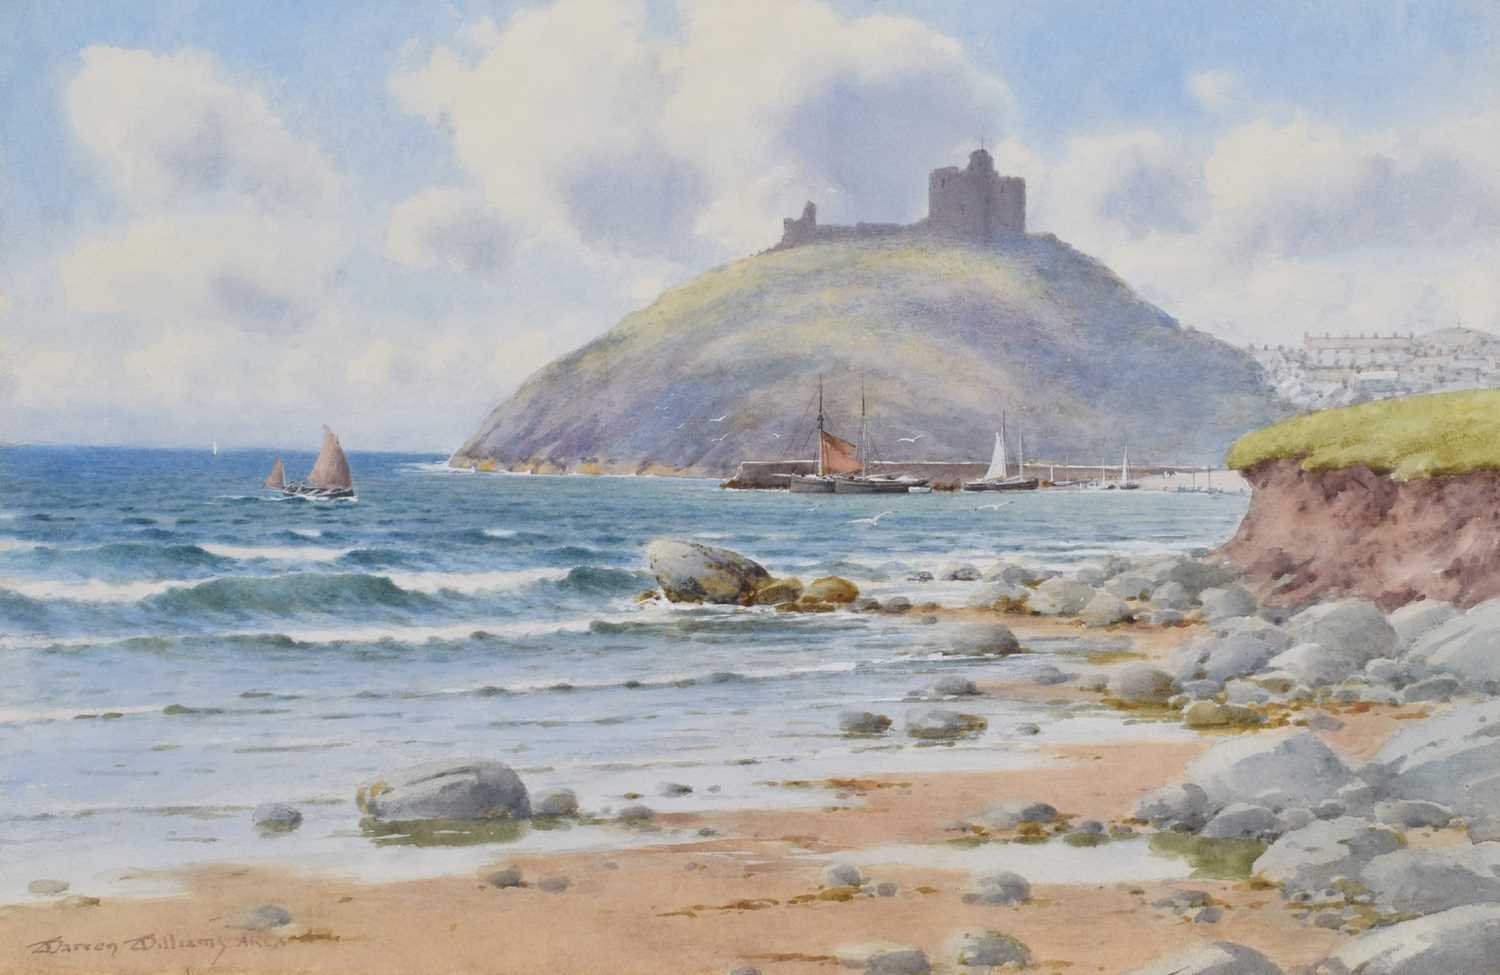 Warren Williams A.R.C.A. (British 1863-1941) "Criccieth Castle", watercolour.